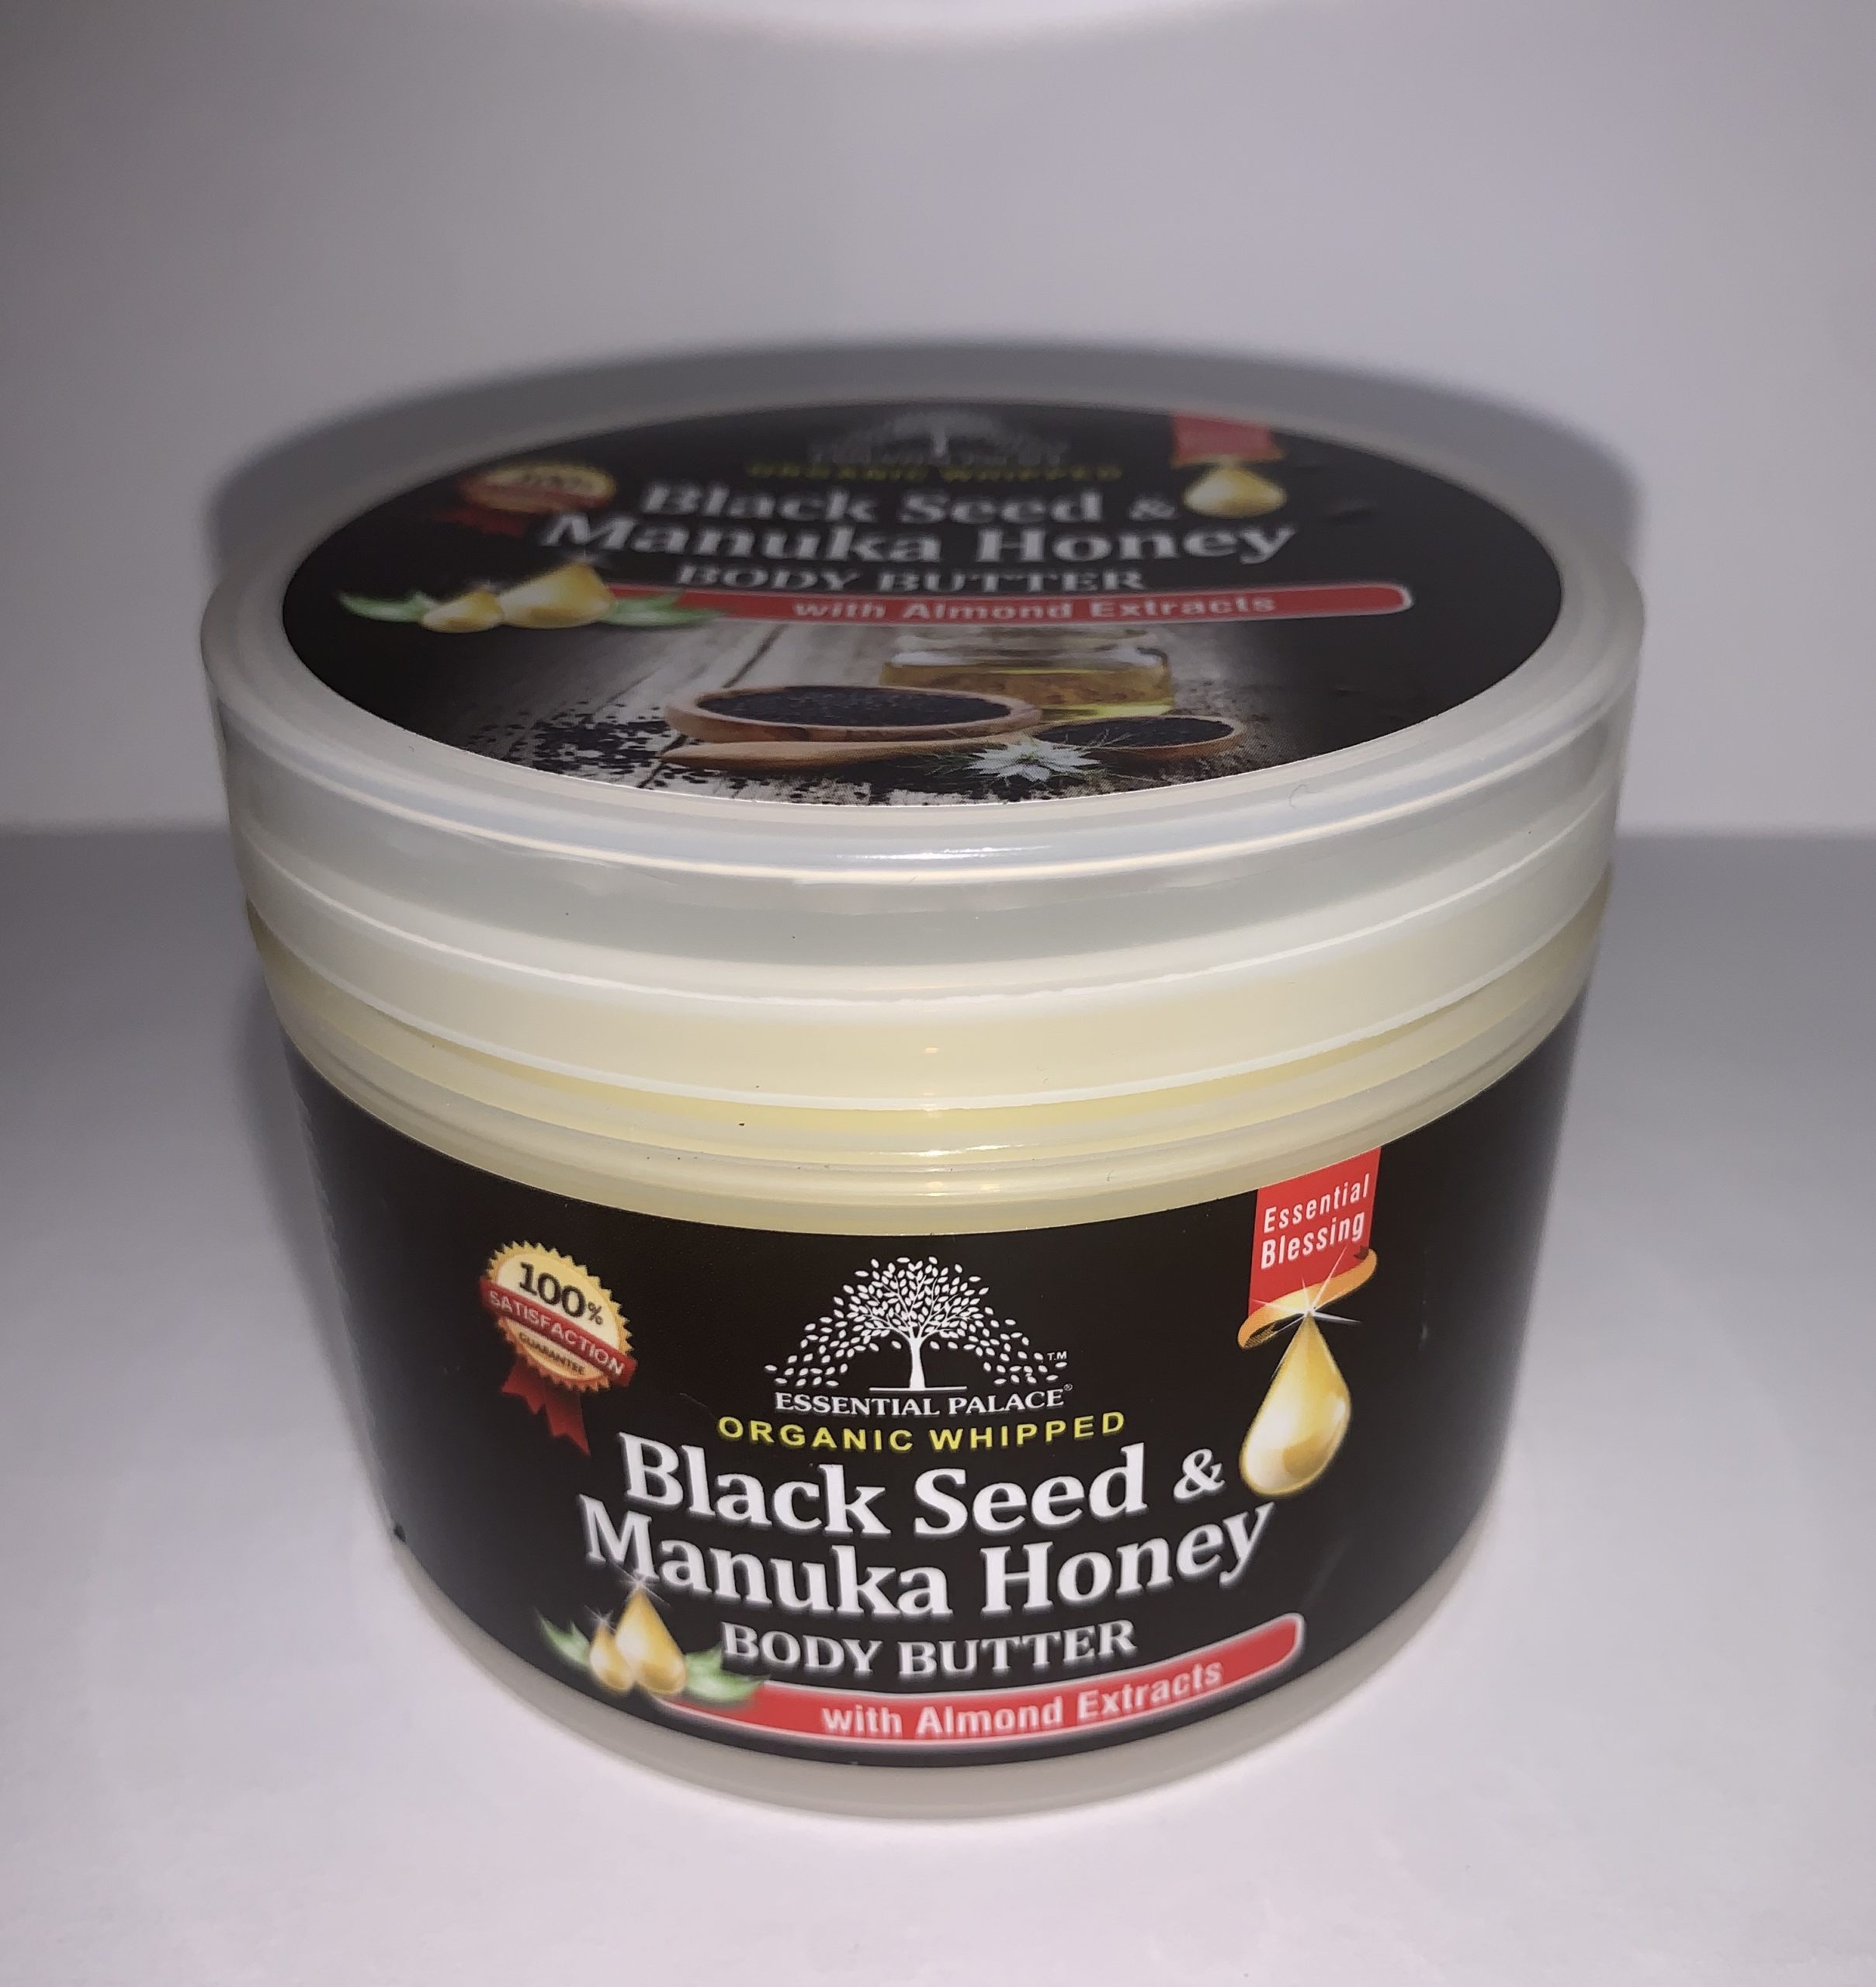 Black Seed & Manuka Honey Body Butter